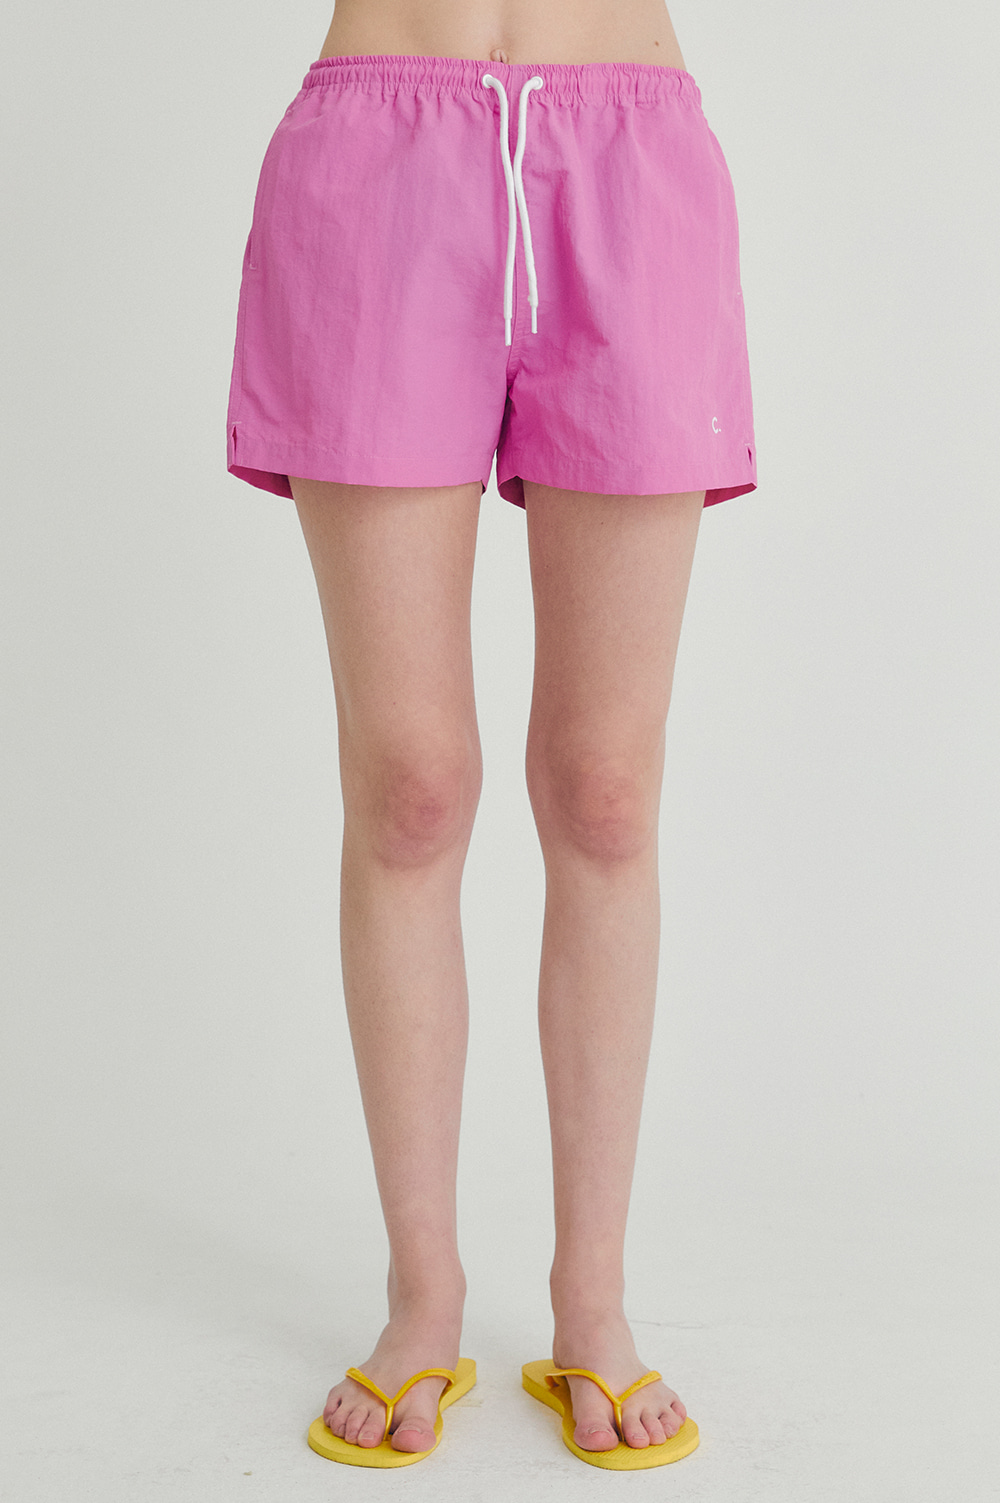 clove - [22SS clove] Light Shorts_Women (Pink)